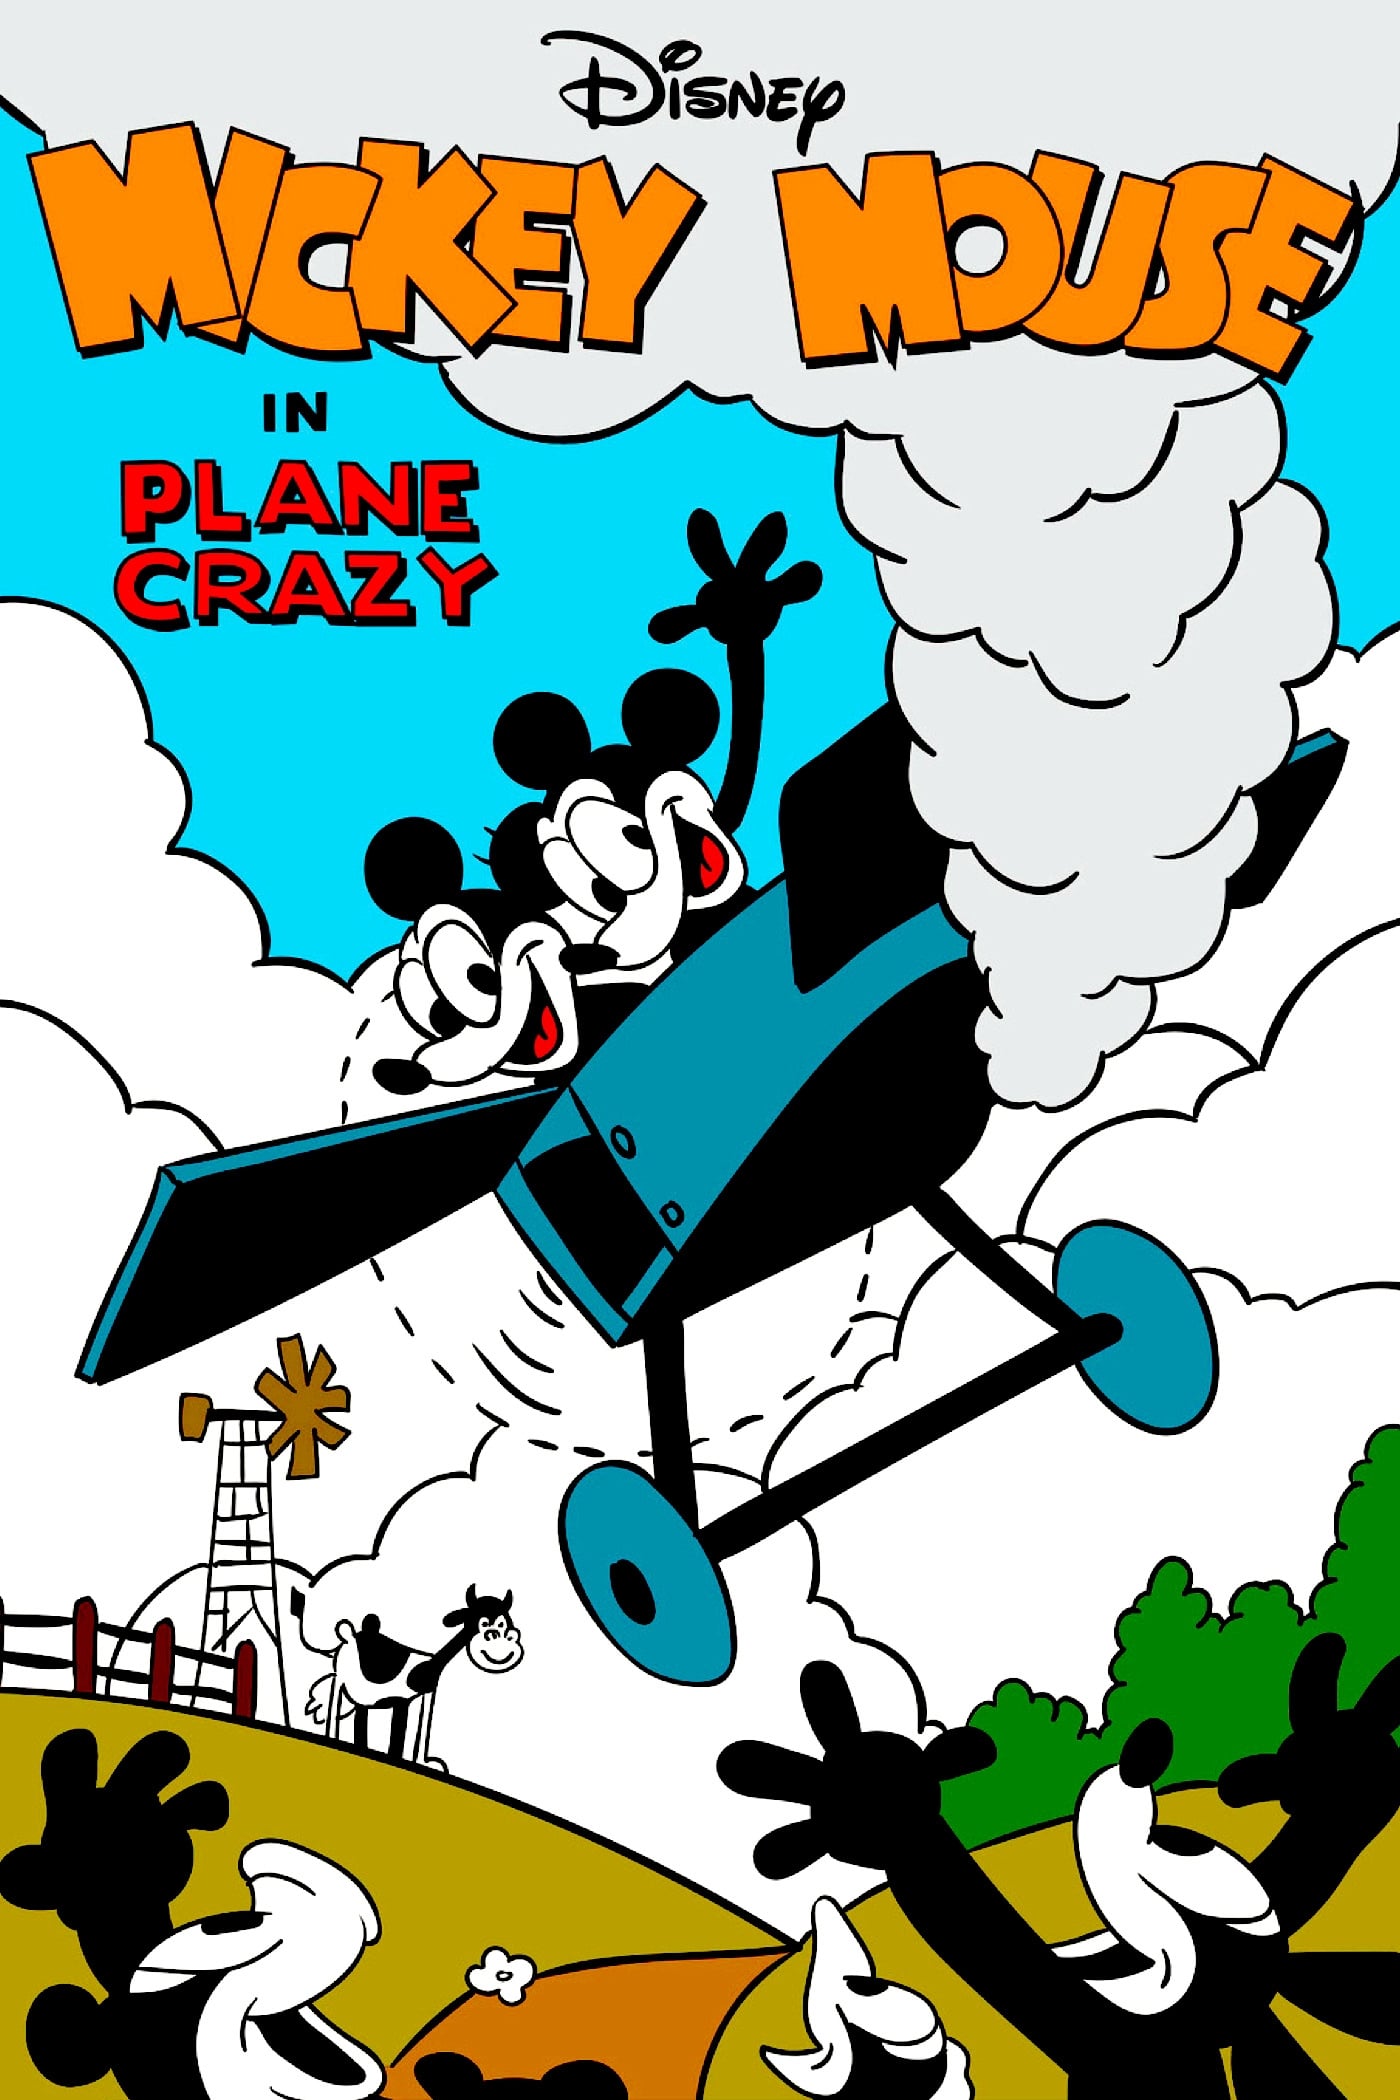 Mickey Mouse: Loco por los aviones